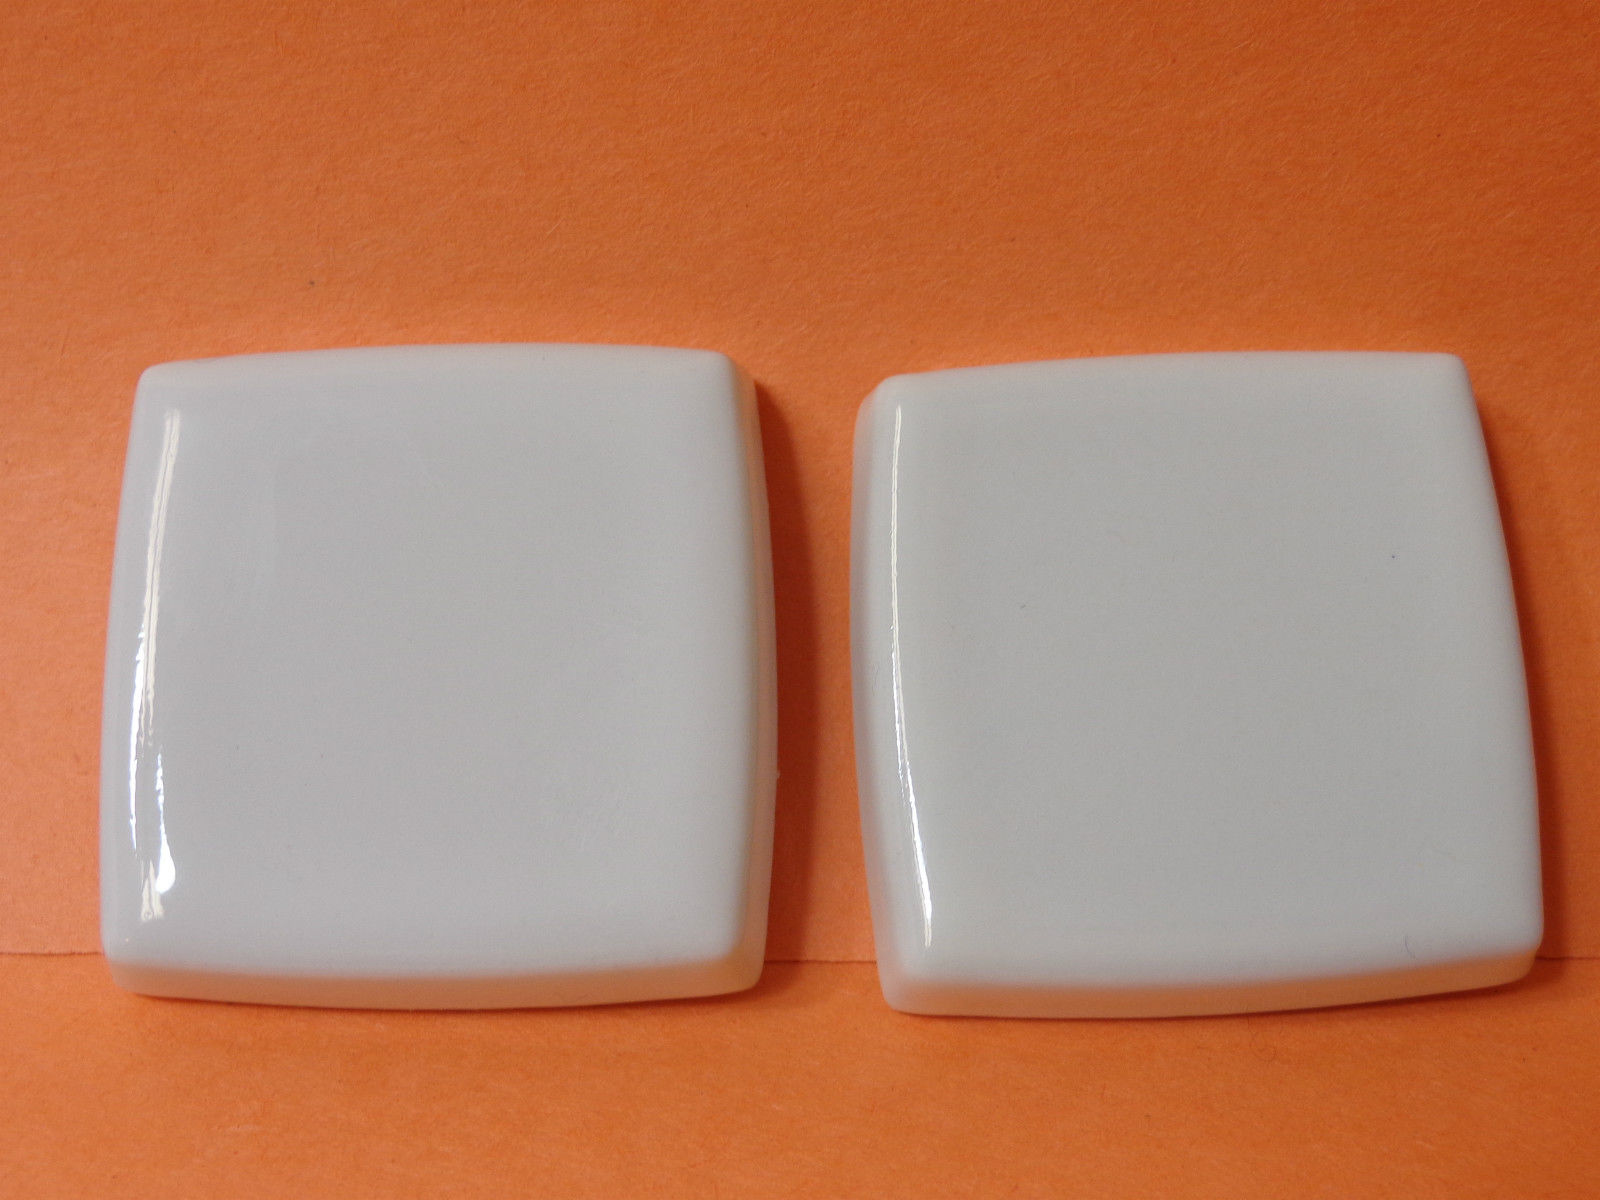 Kohler | 9926-7 | KL9926-7 (22493-7) Kohler Alterna Large 2-1/2" Square Ceramic Inserts - BLACK